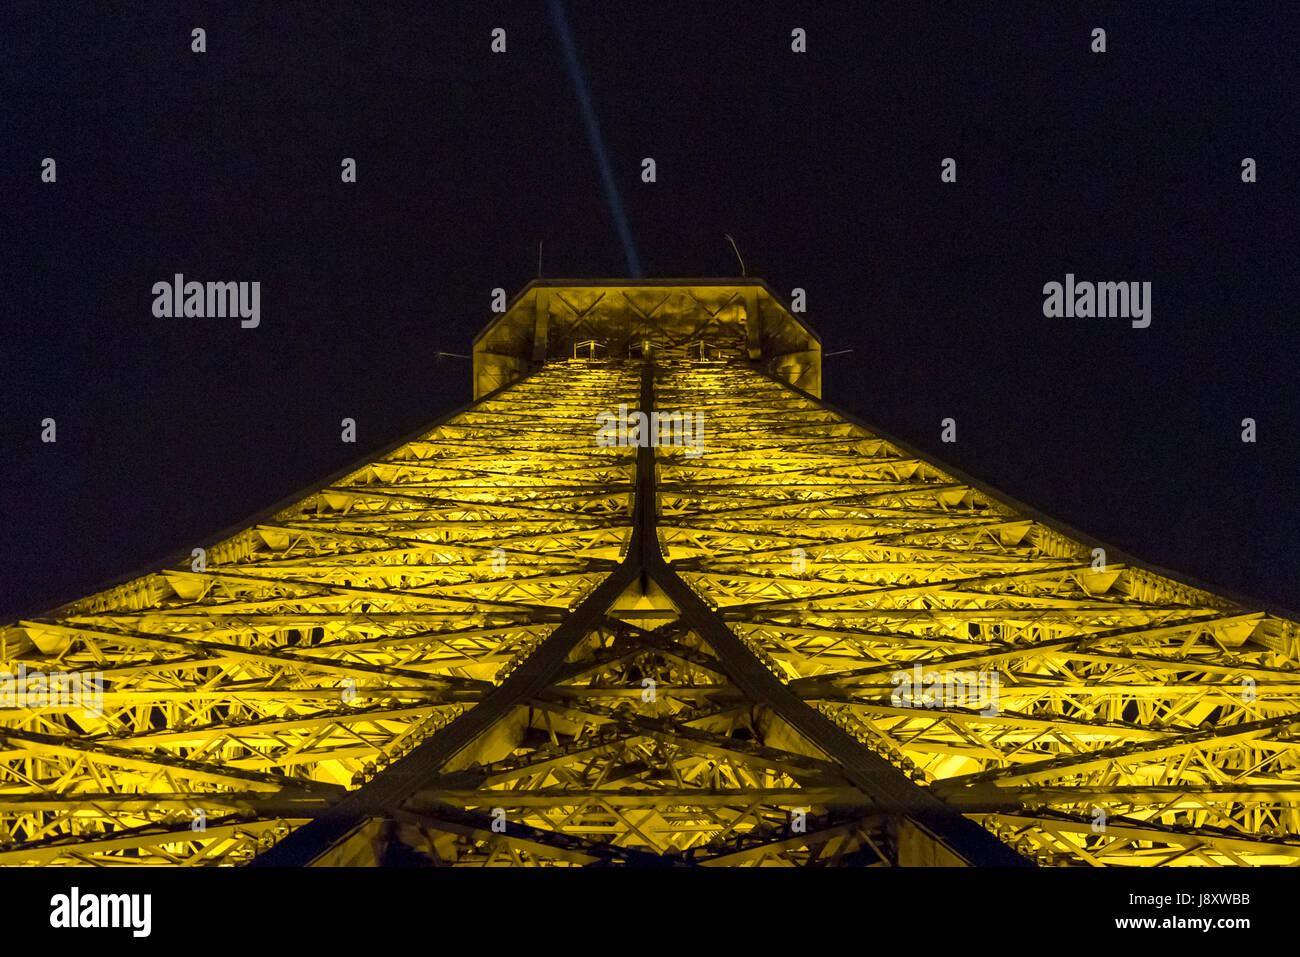 Eiffel Tower illuminated at night Stock Photo